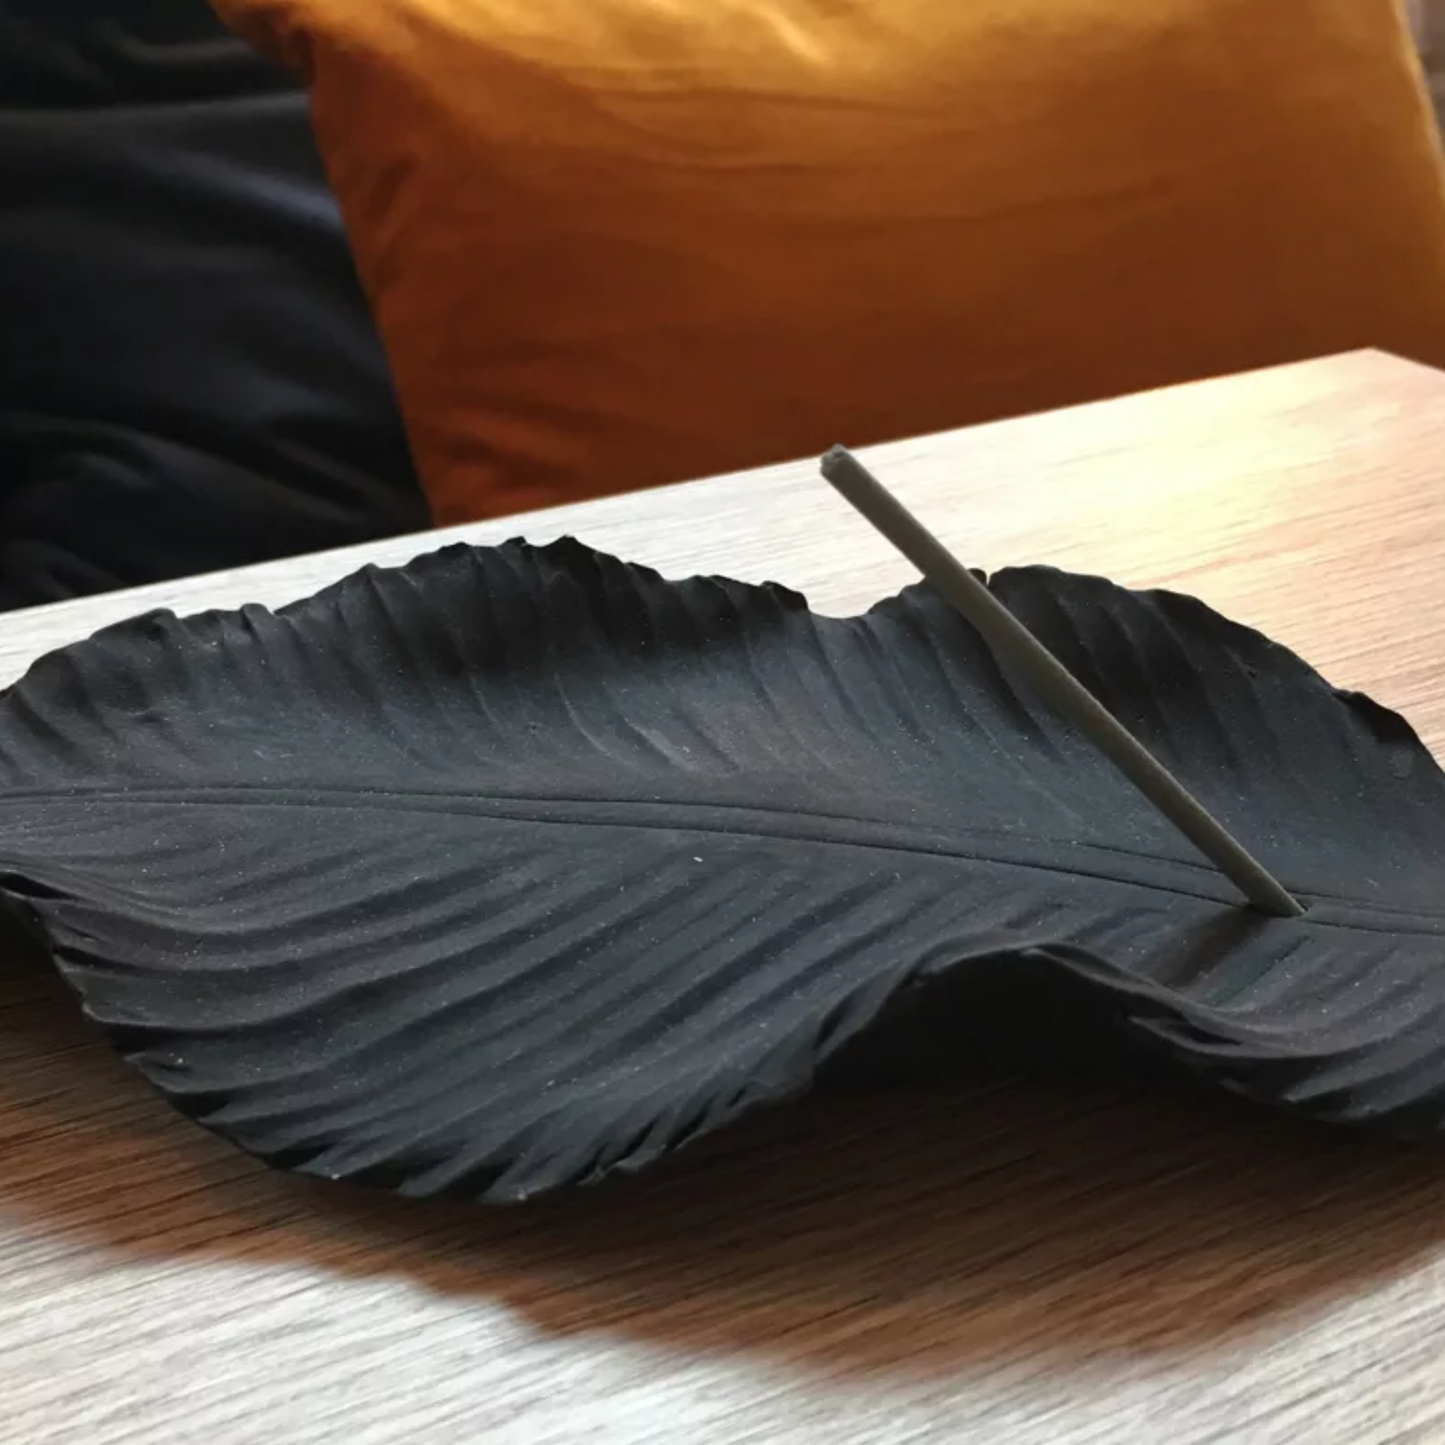 Weihrauchbrenner aus Keramik, Black Leaf (20x15x5cm) - ANOQ